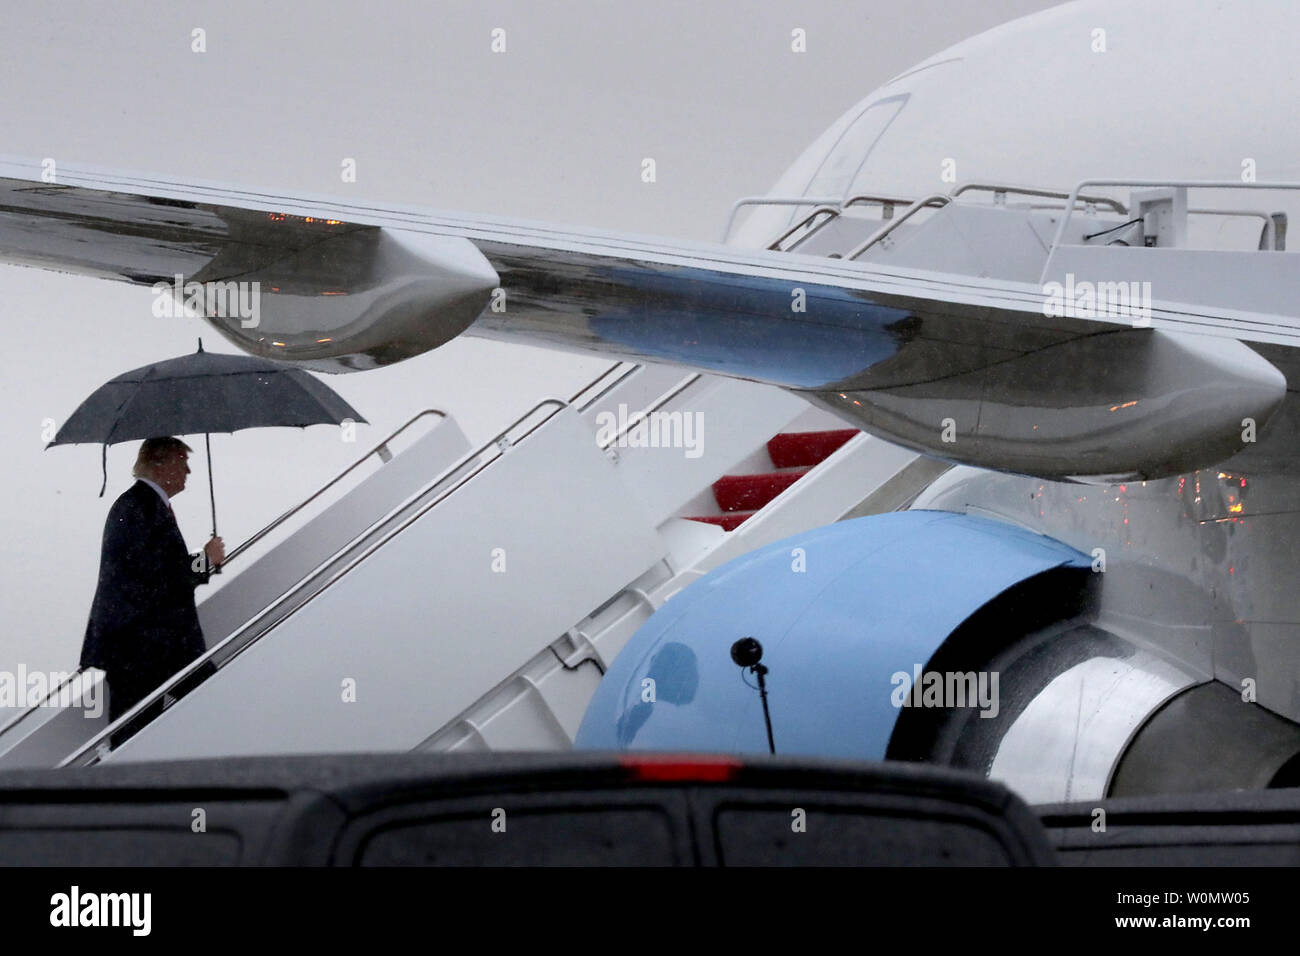 Us-Präsident Donald Trump geht die Treppe hinauf in den Regen, wie er Boards Air Force One am 28. Juli 2017 einen Joint Base Andrews, Maryland. Trump ist Reisen in Ronkonkoma, New York, Erläuterungen zur Durchsetzung von Rechtsvorschriften zu geben. Foto von Chip Somodevilla/UPI Stockfoto